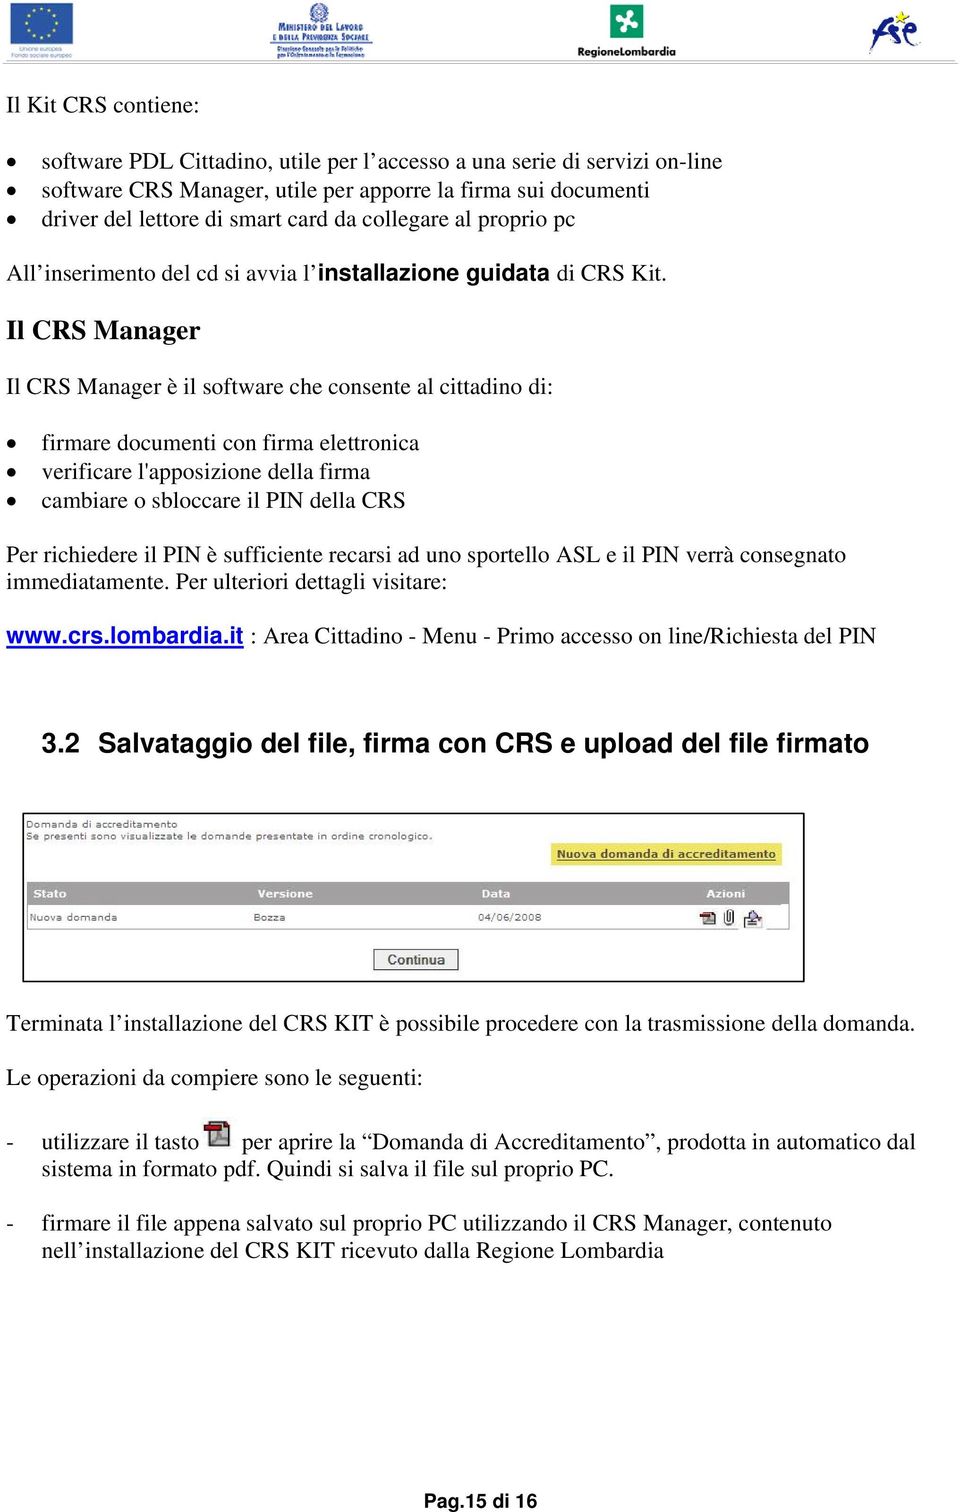 Il CRS Manager Il CRS Manager è il software che consente al cittadino di: firmare documenti con firma elettronica verificare l'apposizione della firma cambiare o sbloccare il PIN della CRS Per